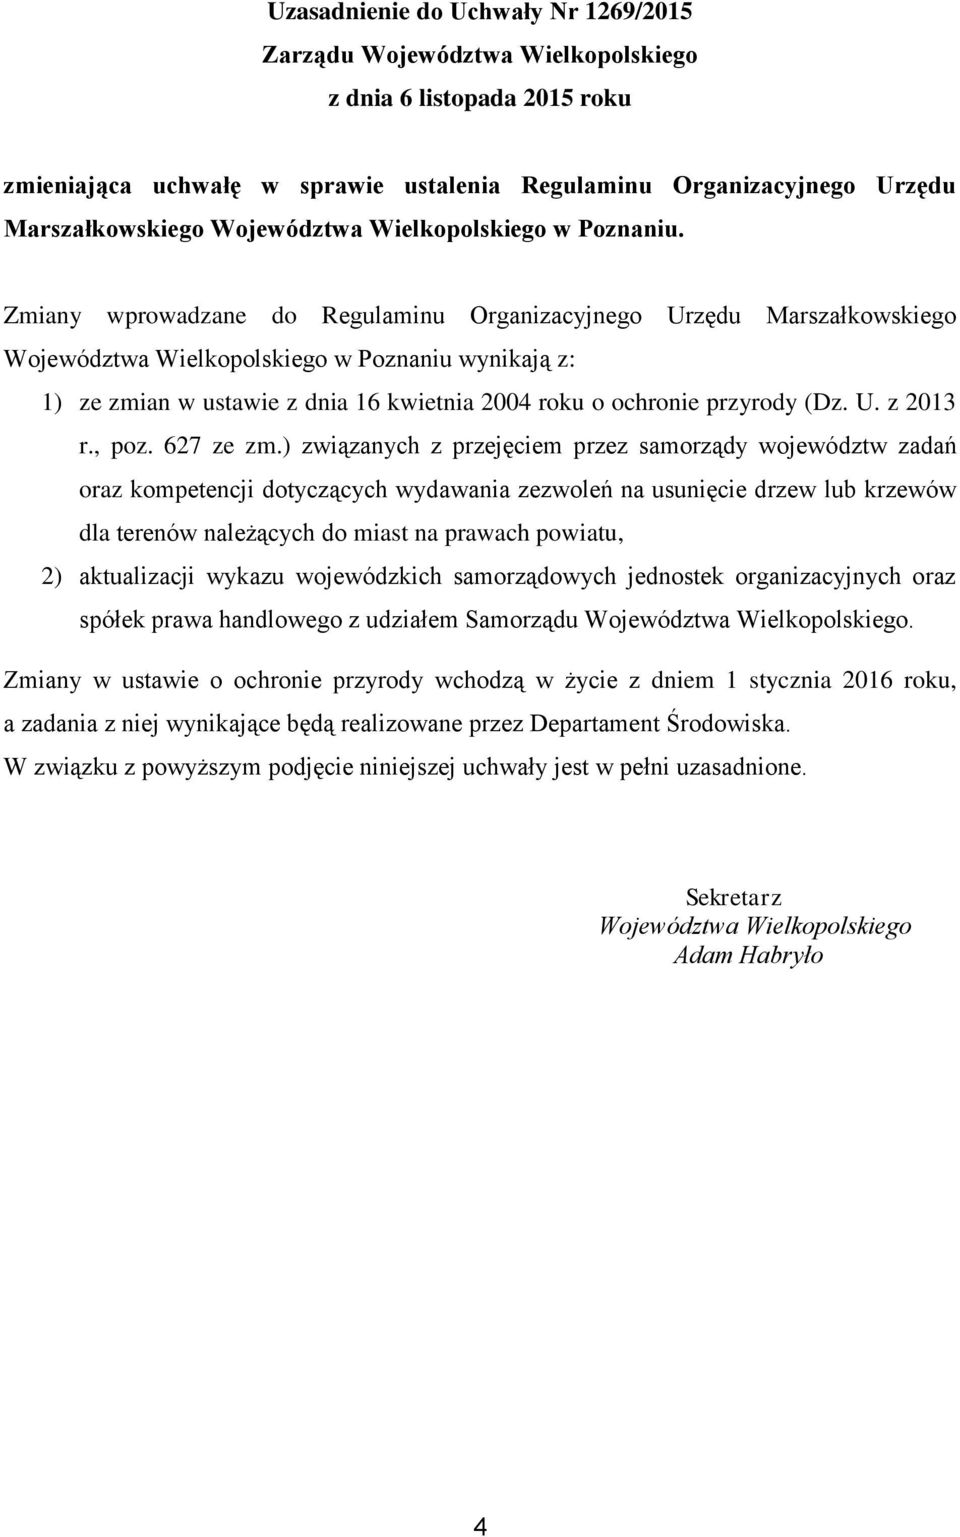 Zmiany wprowadzane do Regulaminu Organizacyjnego Urzędu Marszałkowskiego Województwa Wielkopolskiego wynikają z: 1) ze zmian w ustawie z dnia 16 kwietnia 2004 roku o ochronie przyrody (Dz. U. z 2013 r.